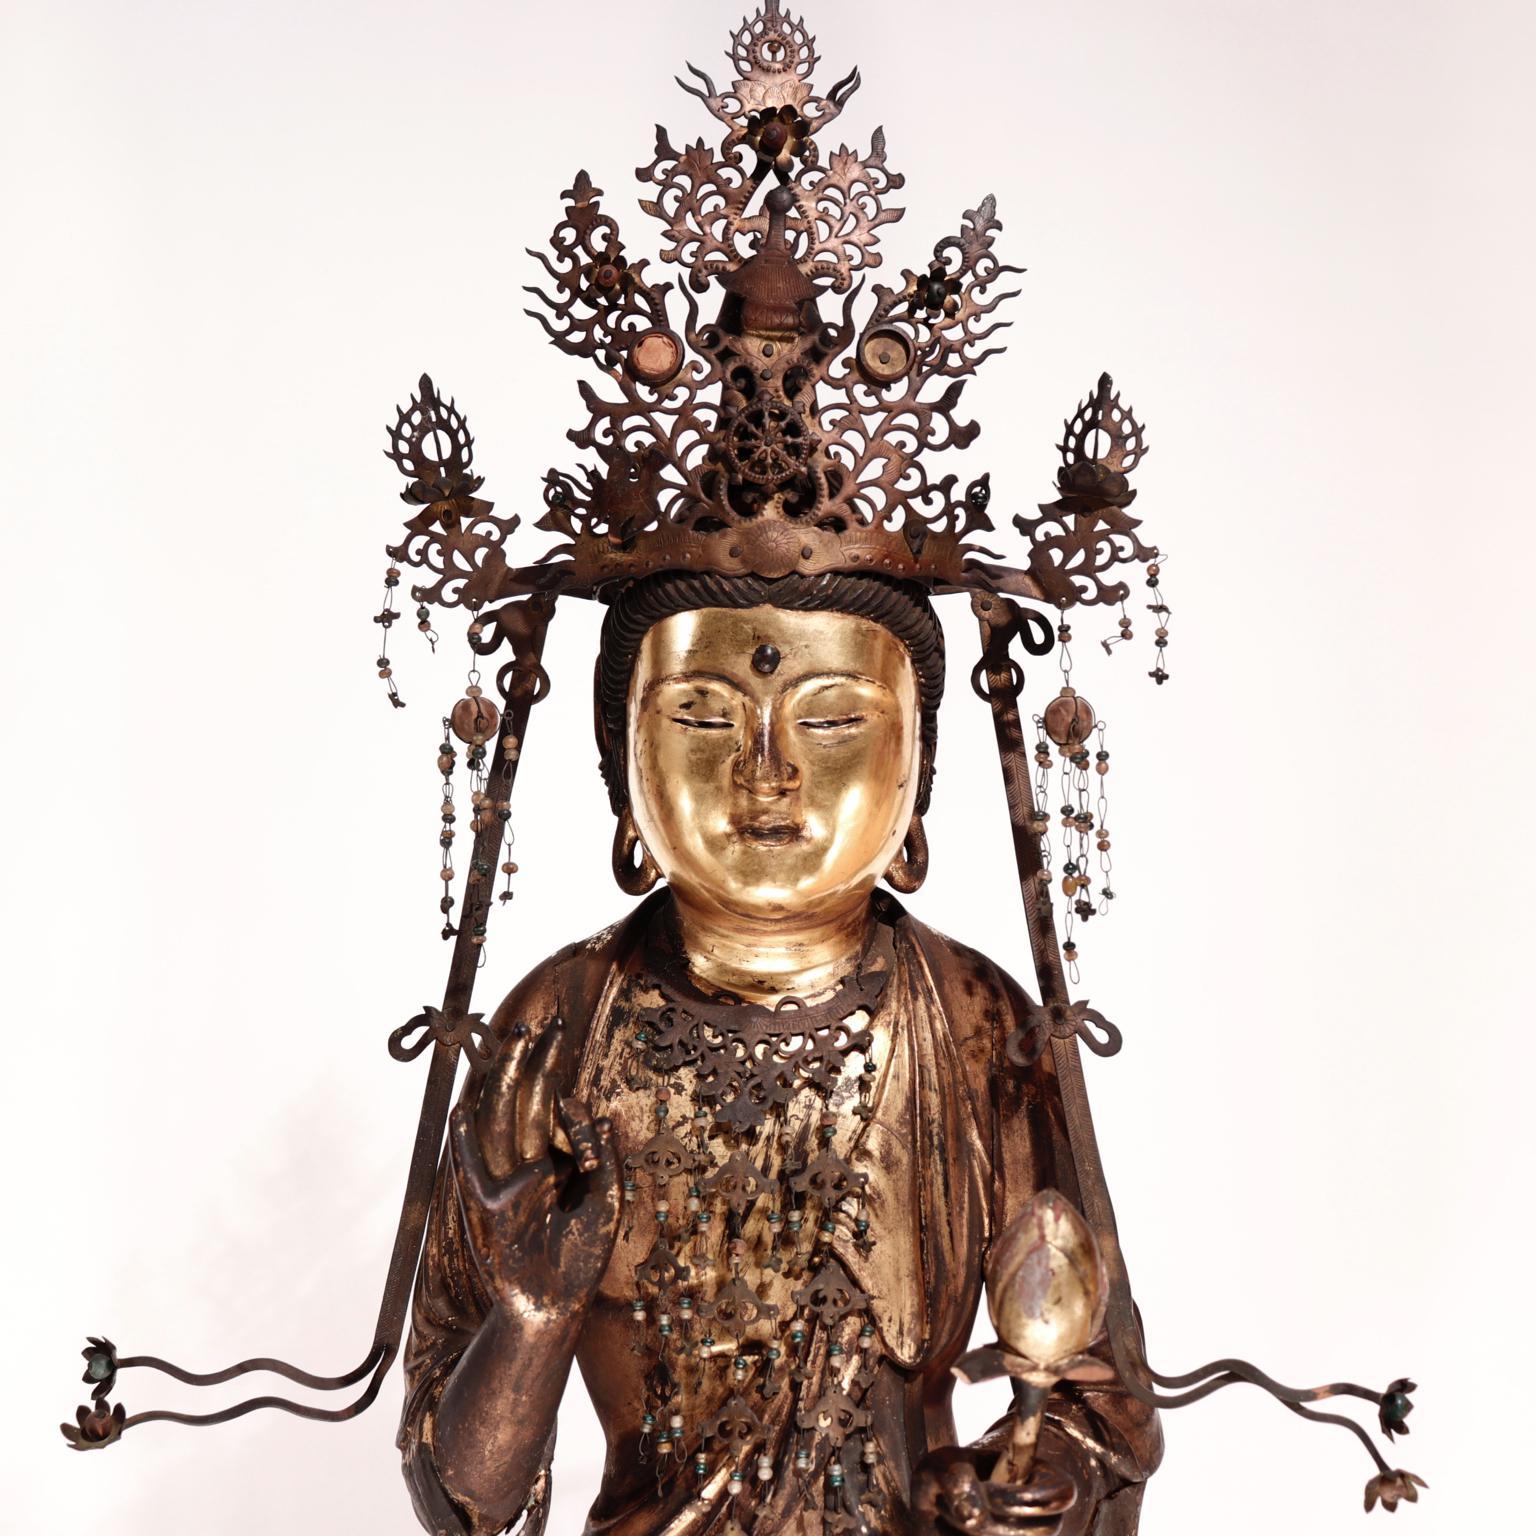 Japanische buddhistische montierte Holzskulptur von Kannon-Bosatsu (Avalokitesvara), dem Gott des Mitgefühls, stehende männliche Figur mit reichem Mantelumhang einschließlich der mit einem Anhänger umwickelten Ärmel, stehend auf einem Lotussockel